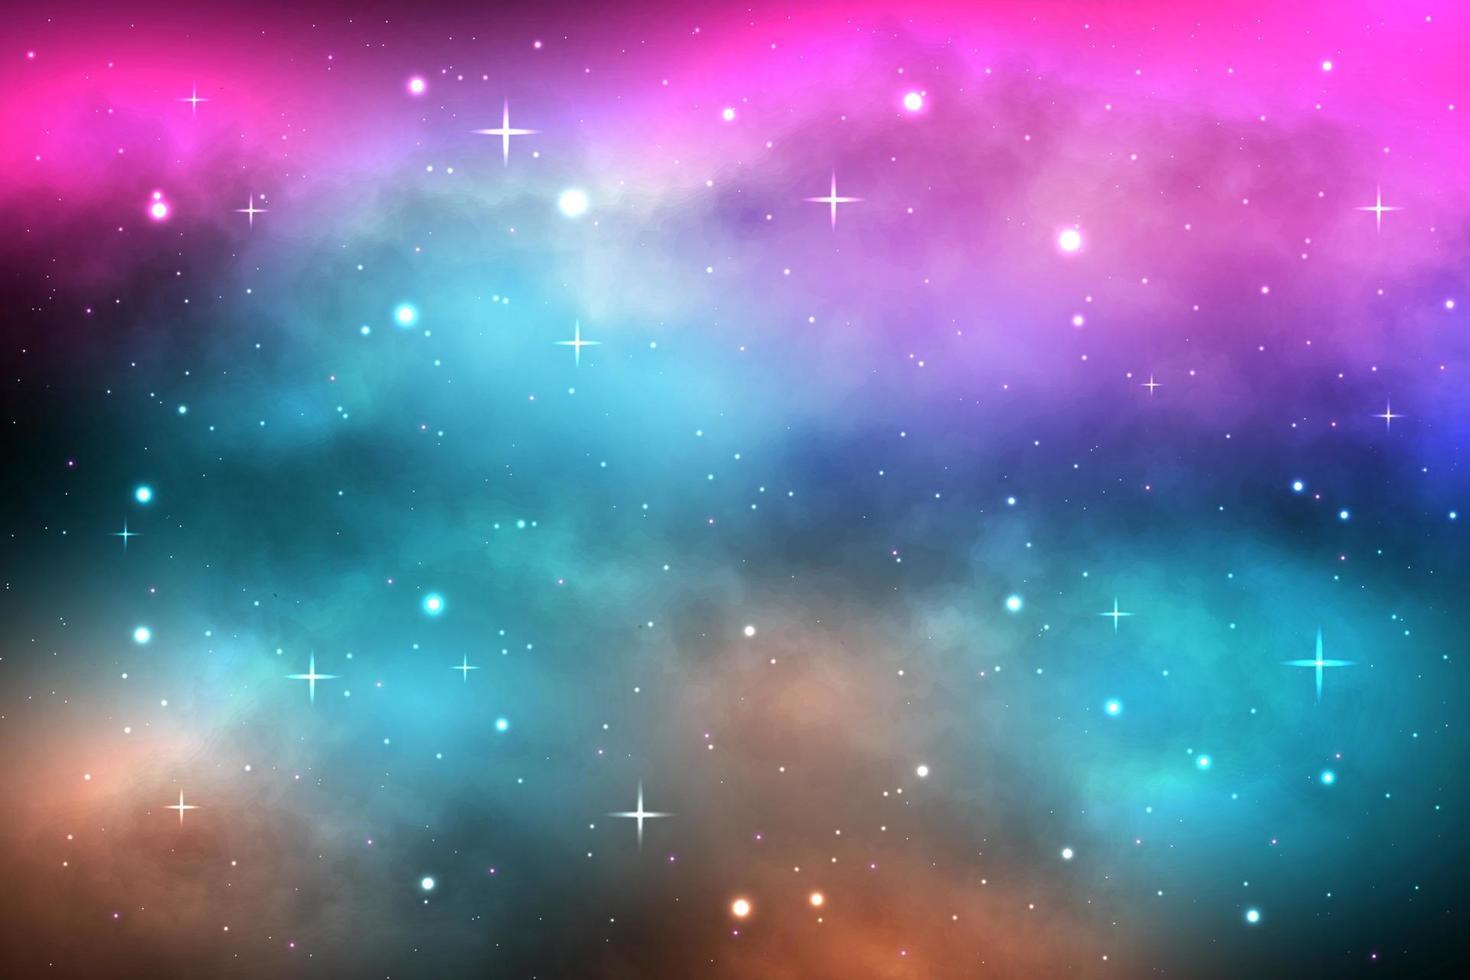 fond de galaxie spatiale avec étoiles brillantes et nébuleuse, cosmos vectoriel avec voie lactée colorée, galaxie dans la nuit étoilée, illustration vectorielle